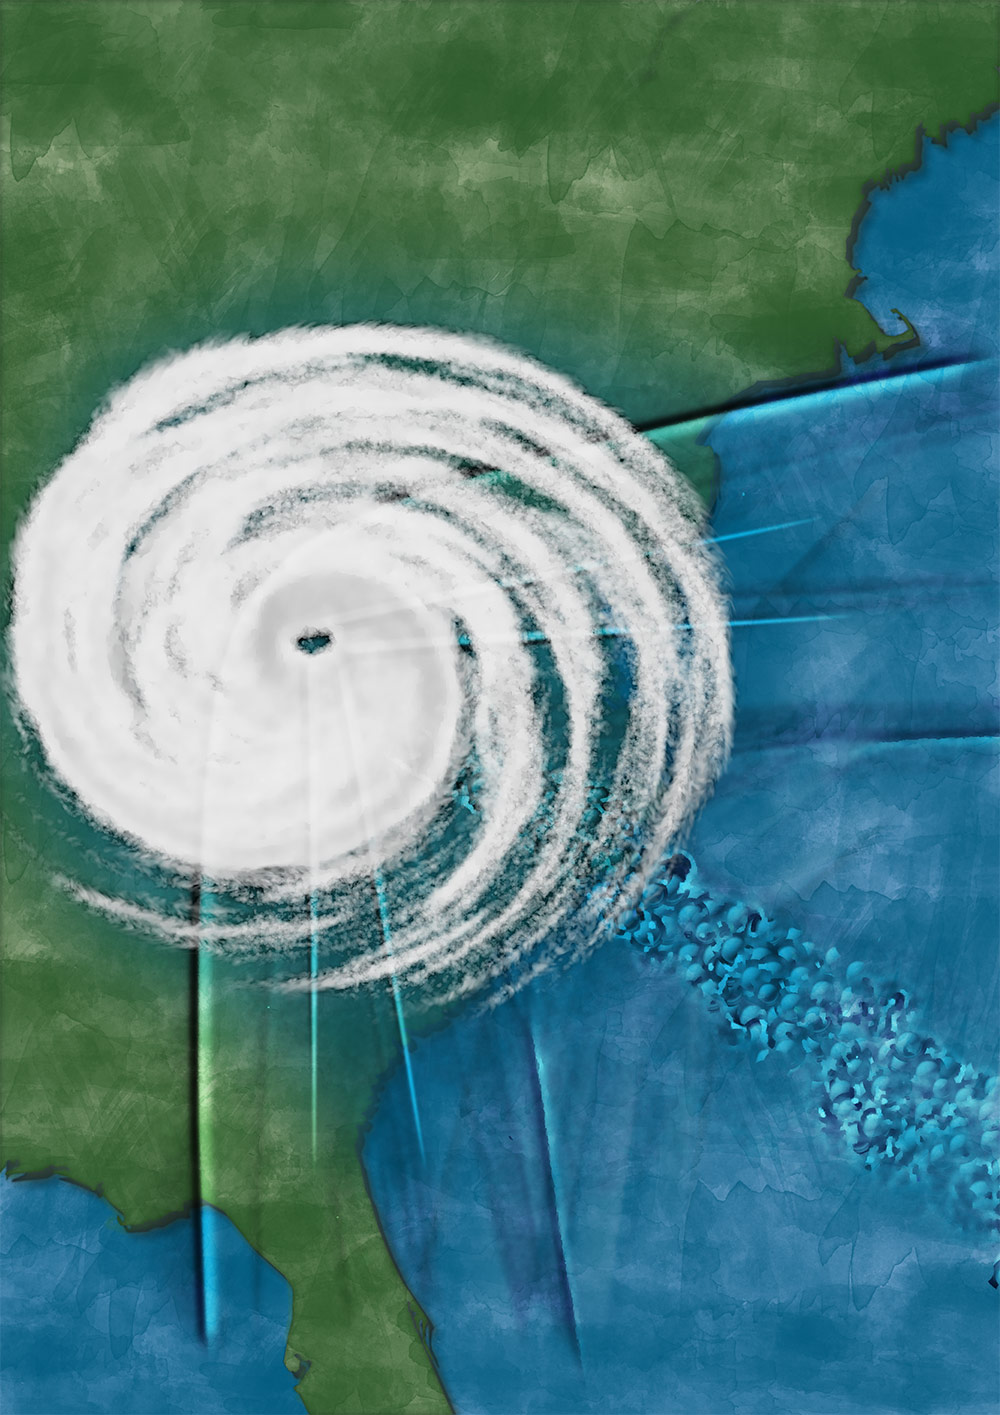 北米に上陸するハリケーンのイメージ画像。